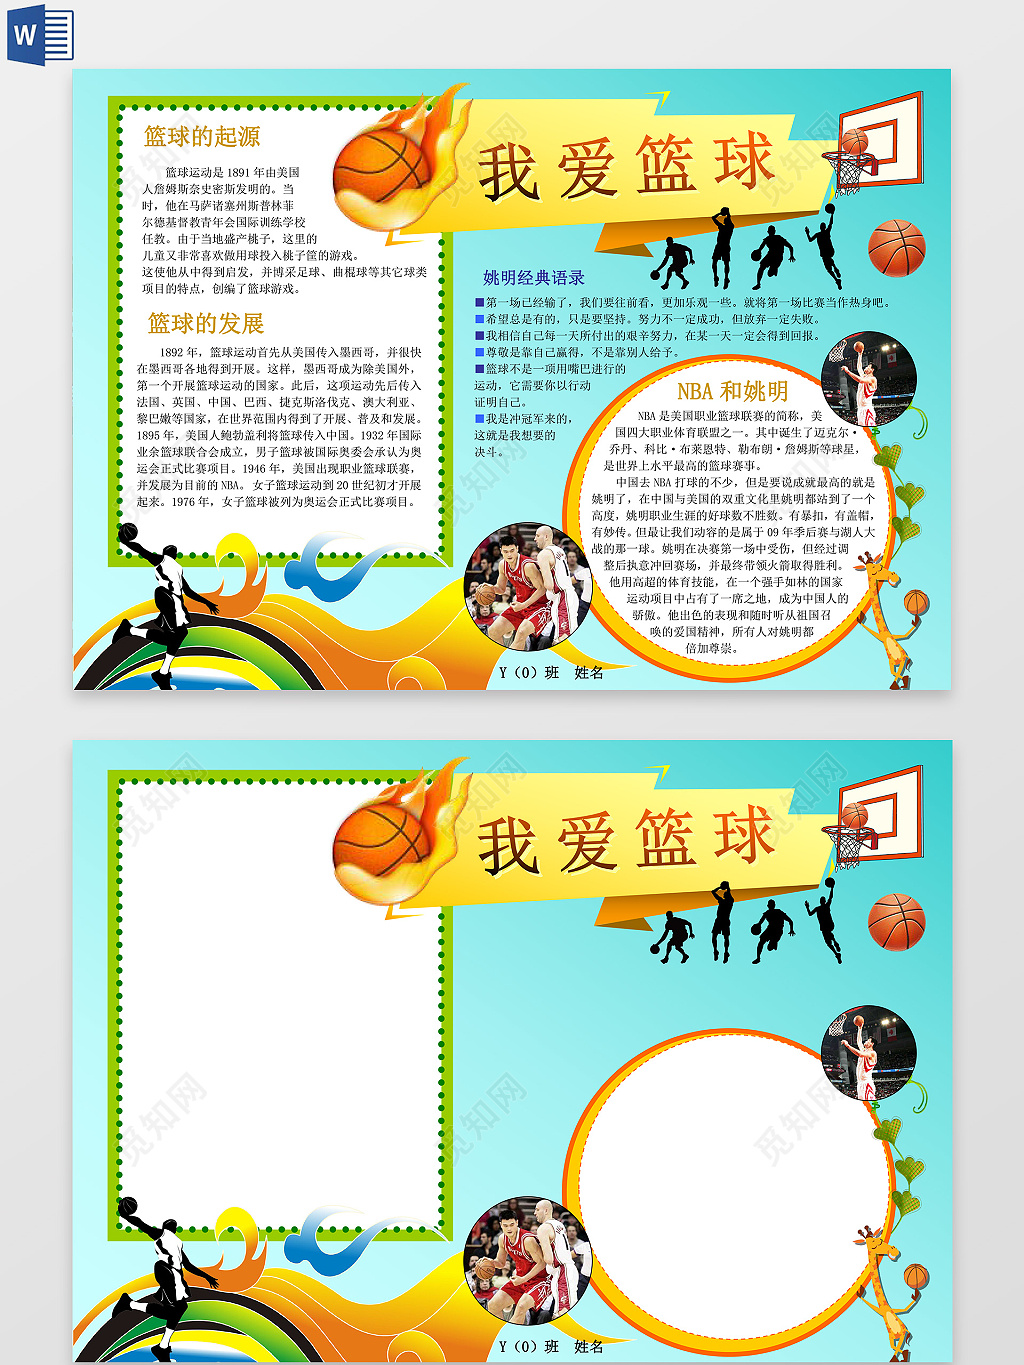 创意篮球争霸赛健身宣传海报图片下载 - 觅知网